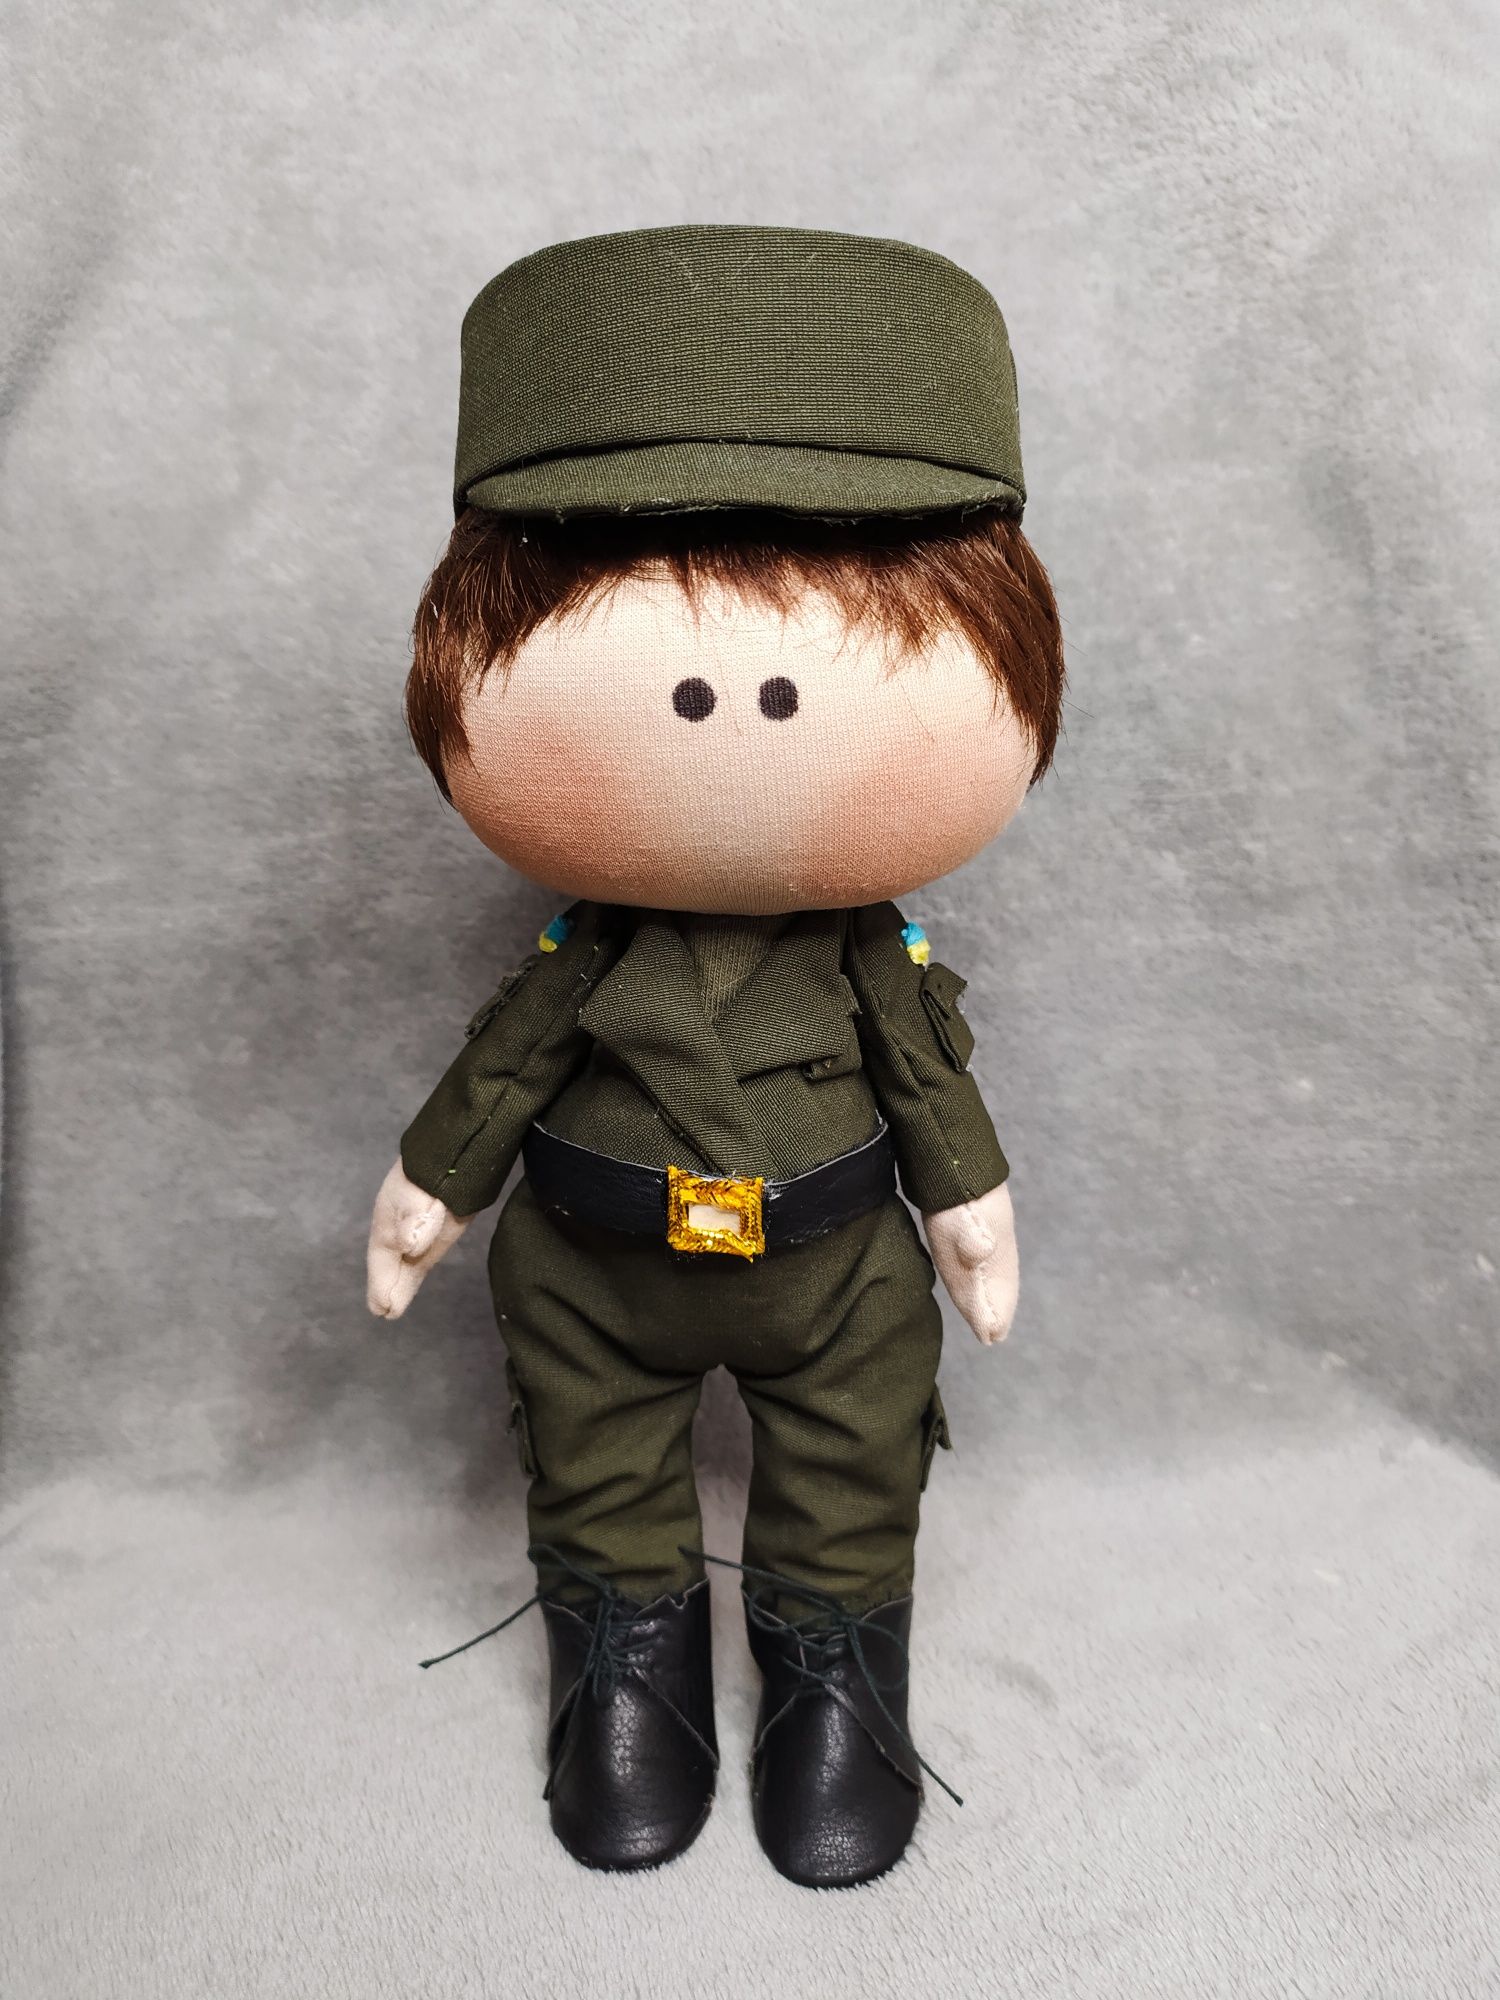 Интерьерная кукла военный, солдат Распродажа наличия